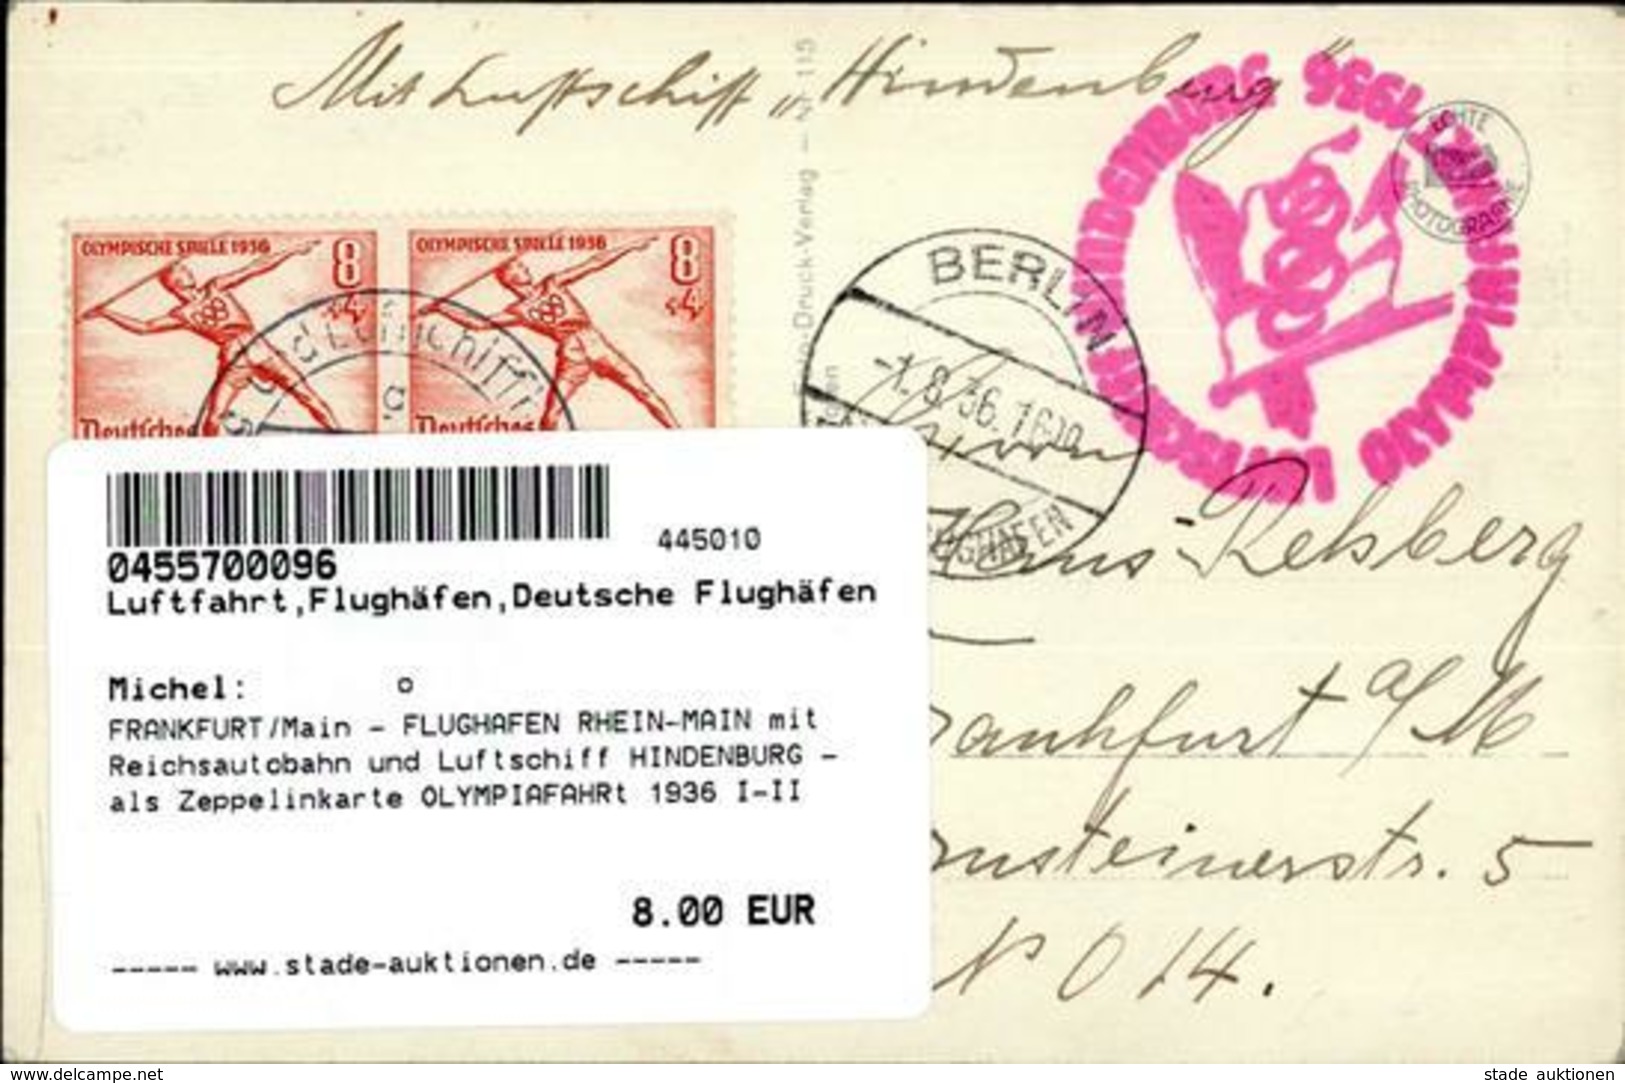 FRANKFURT/Main - FLUGHAFEN RHEIN-MAIN Mit Reichsautobahn Und Luftschiff HINDENBURG - Als Zeppelinkarte OLYMPIAFAHRt 1936 - Guerre 1914-18